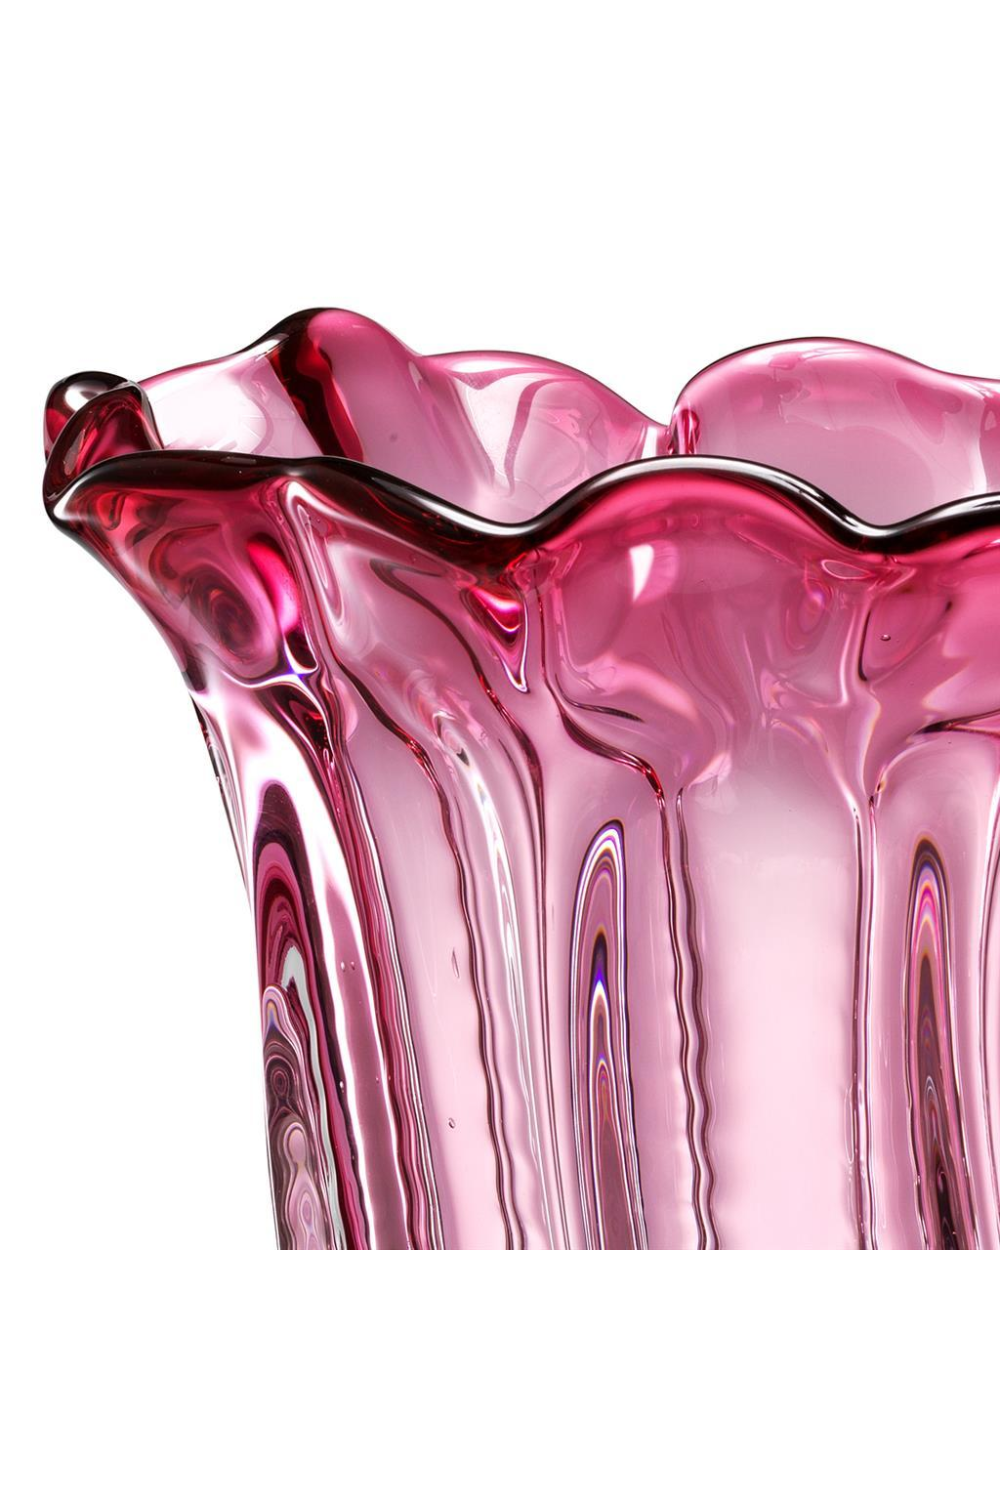 Pink Vase | Eichholtz Caliente L | OROA